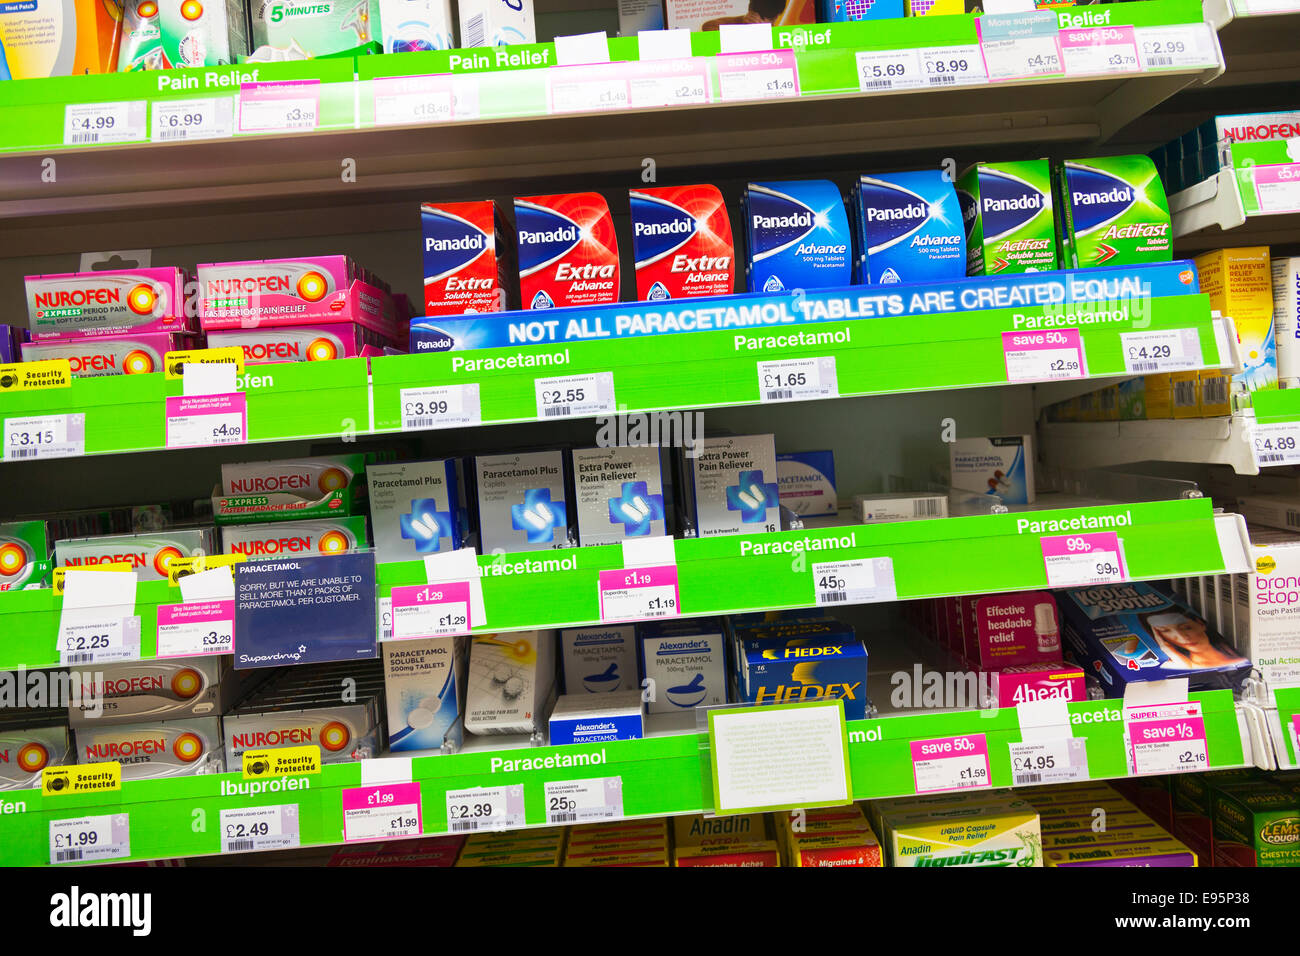 Panadol Schmerzlinderung Tabletten Paracetamol Nurofen Hedex Produkte im Regal bei Apotheke Shop Shop im display Stockfoto